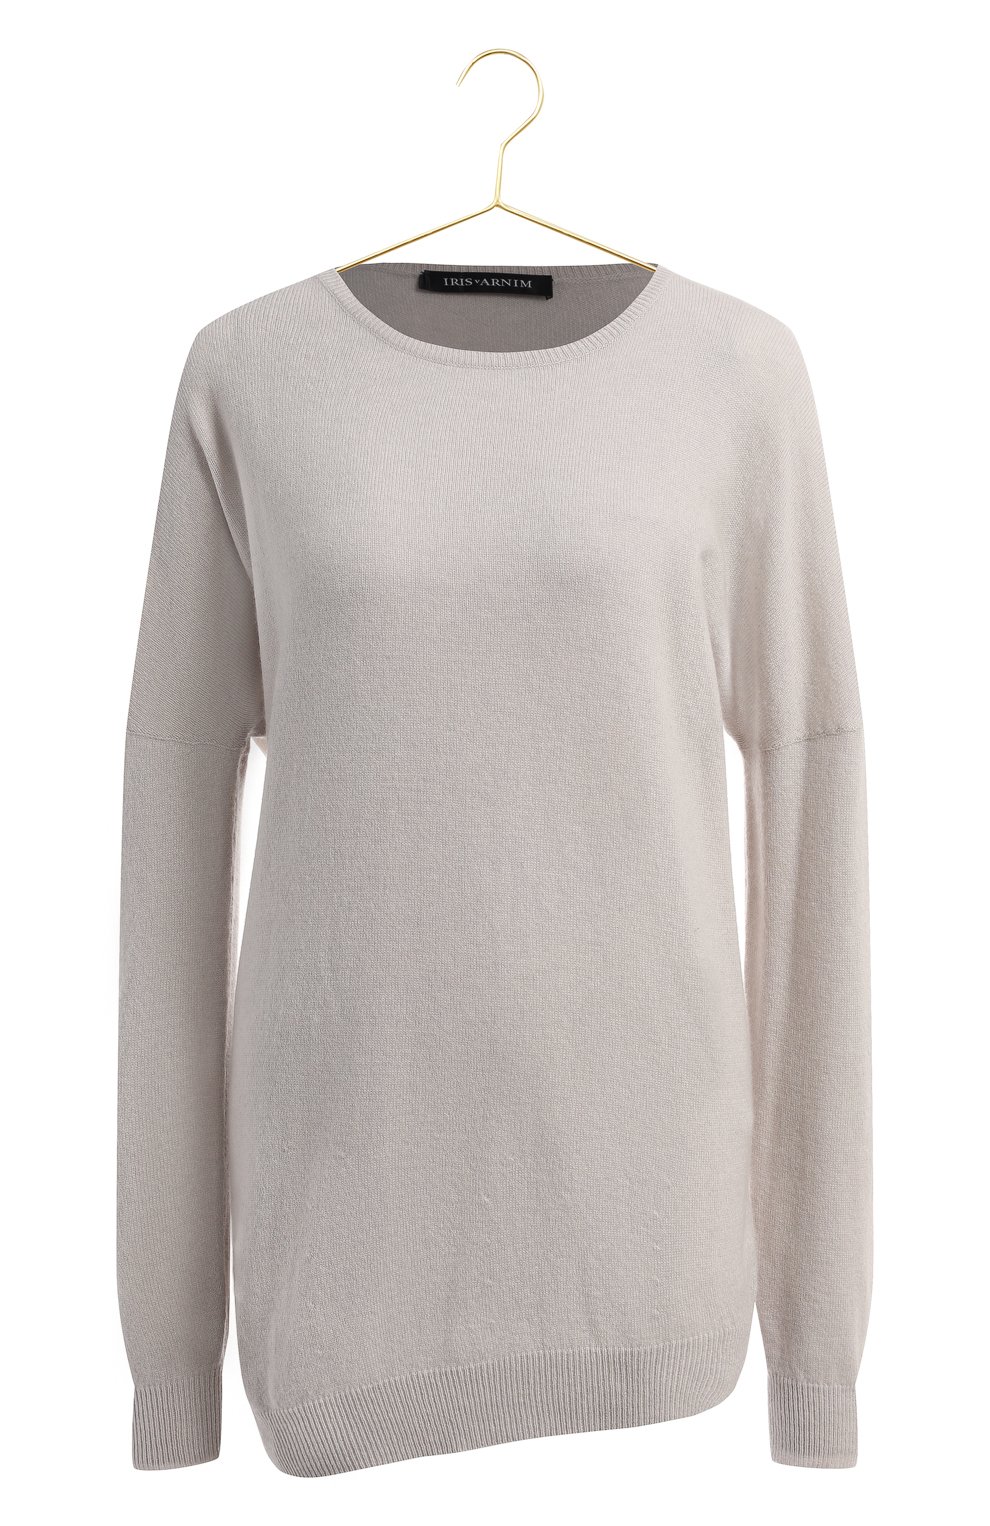 Кашемировый пуловер | Iris Von Arnim | Серый - 1